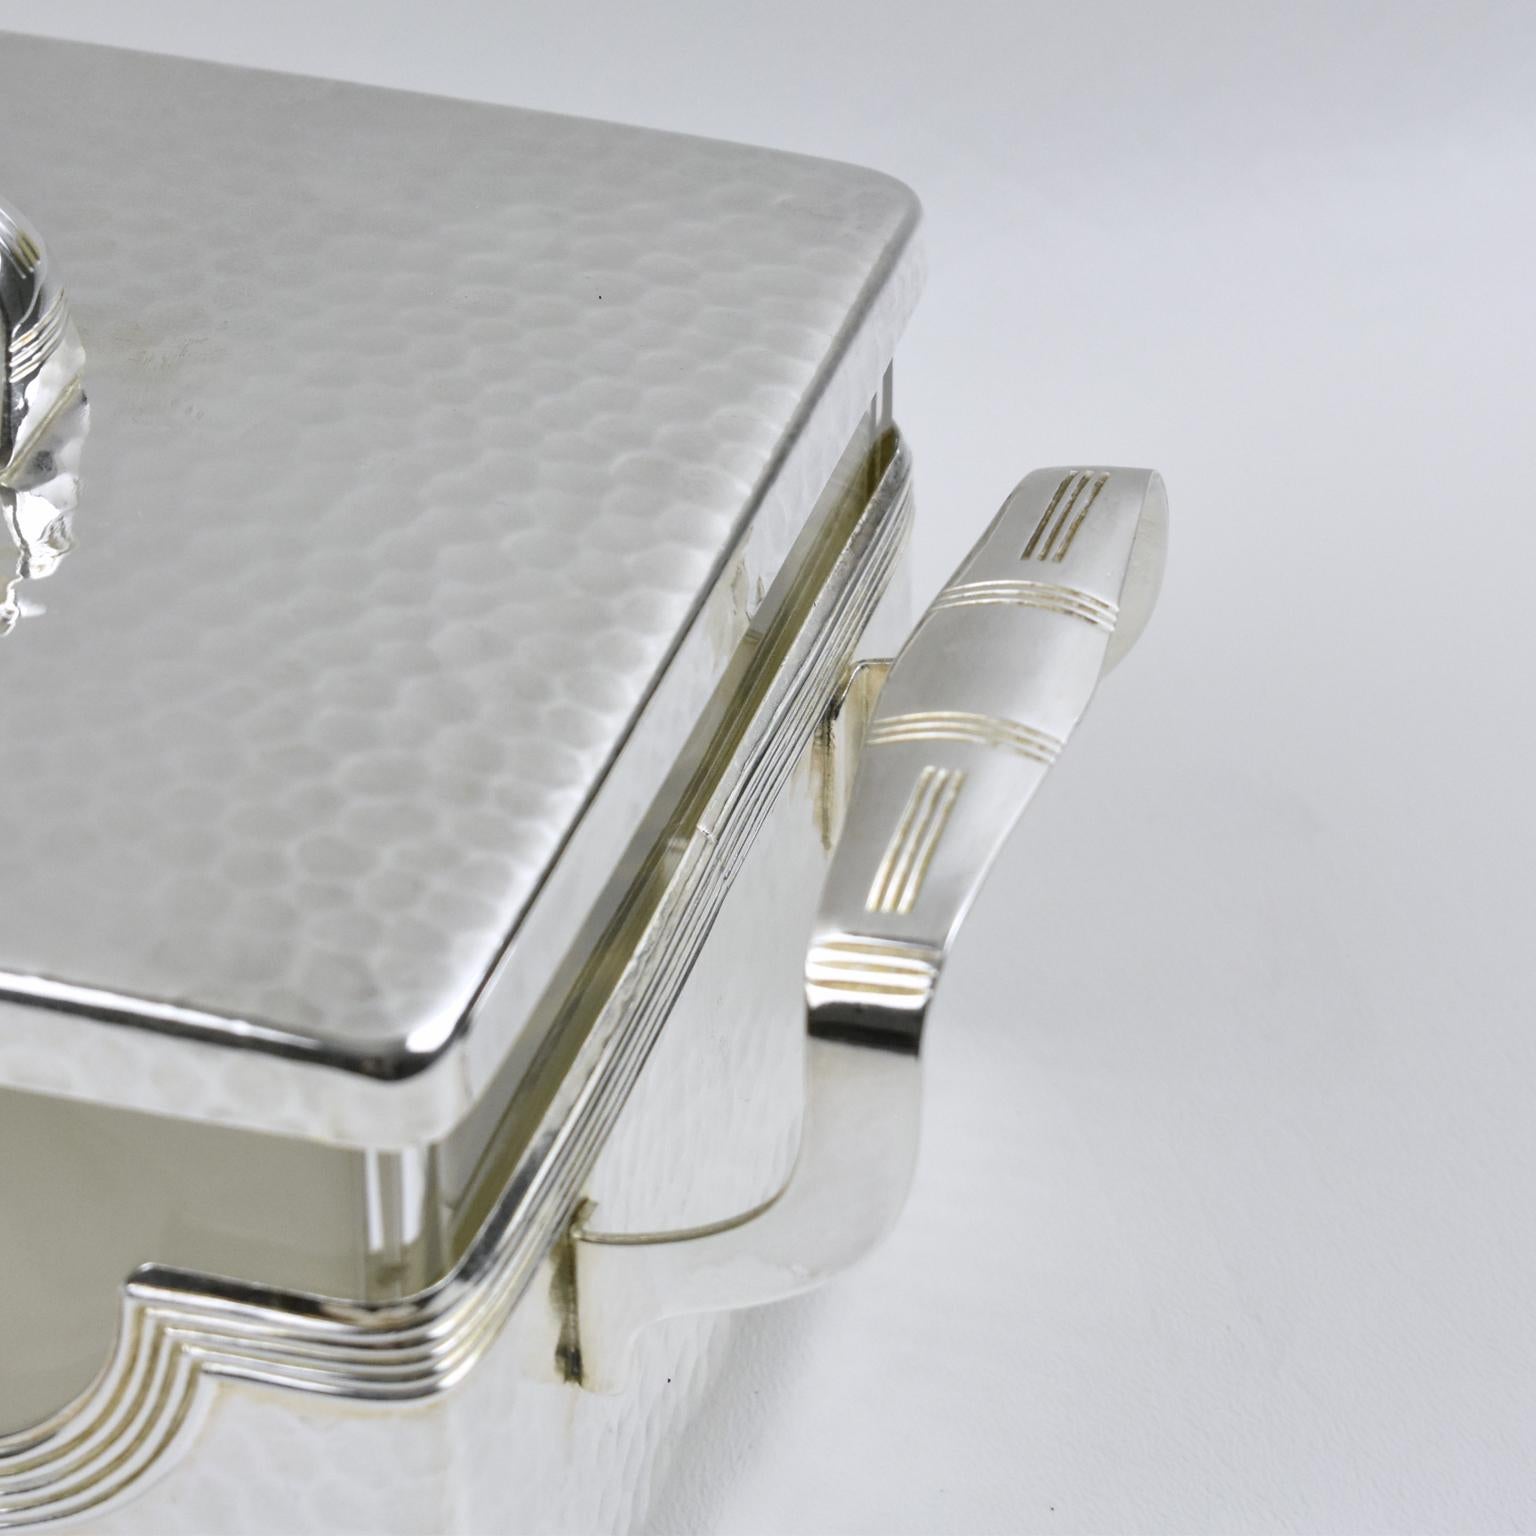 Jugendstil Silver Plate Cookie Box with Original Crystal Insert 1